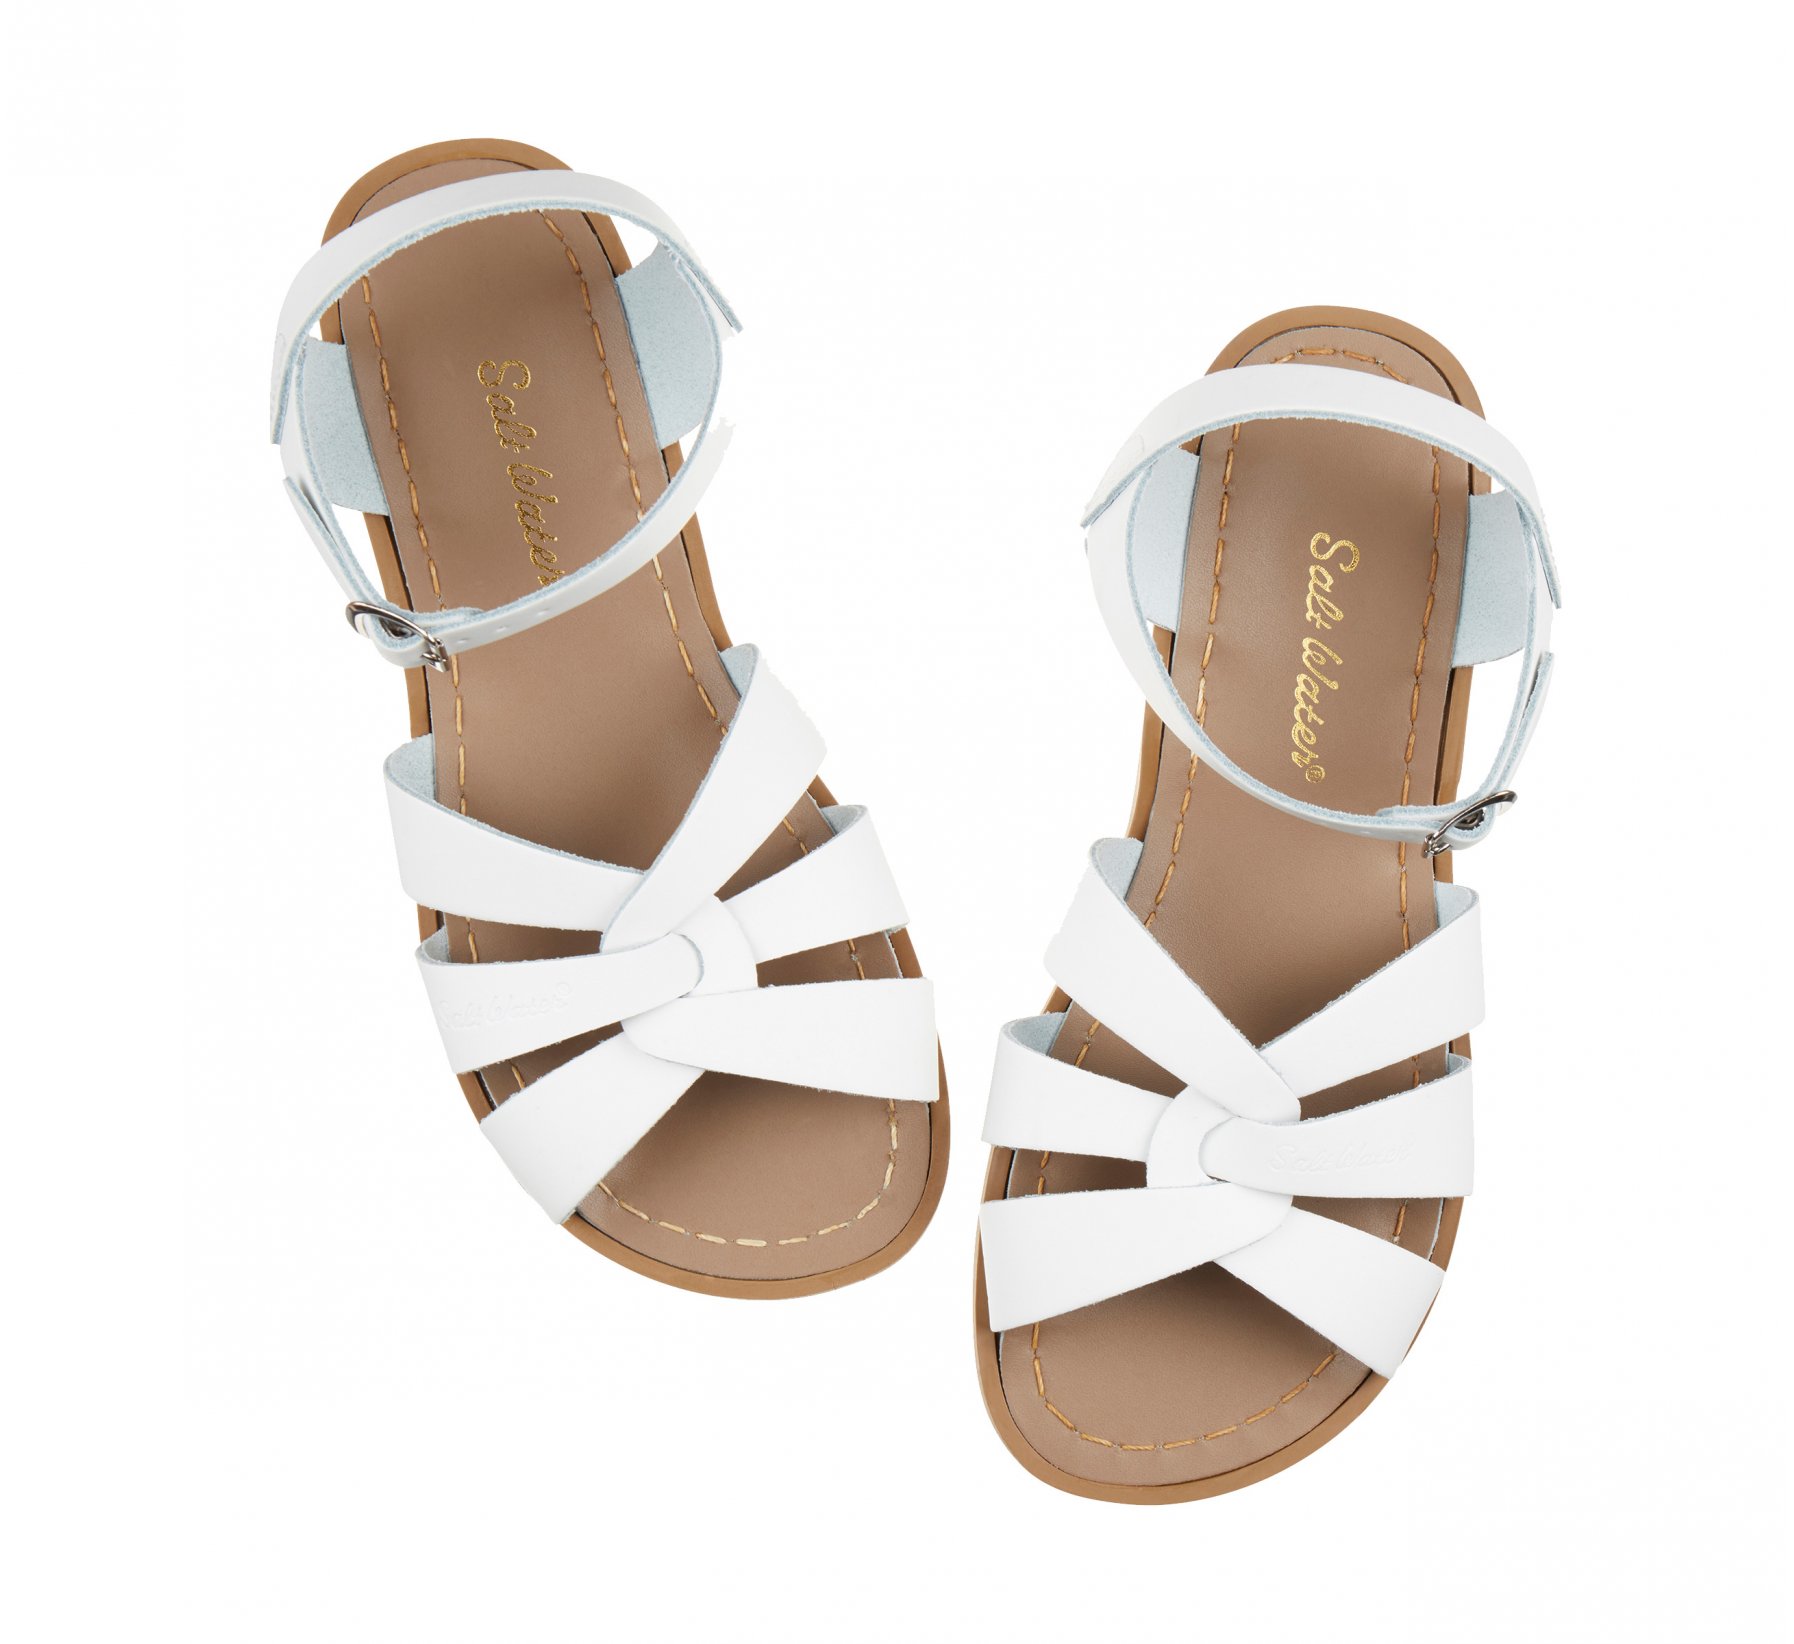 Original Putih - Salt Water Sandals